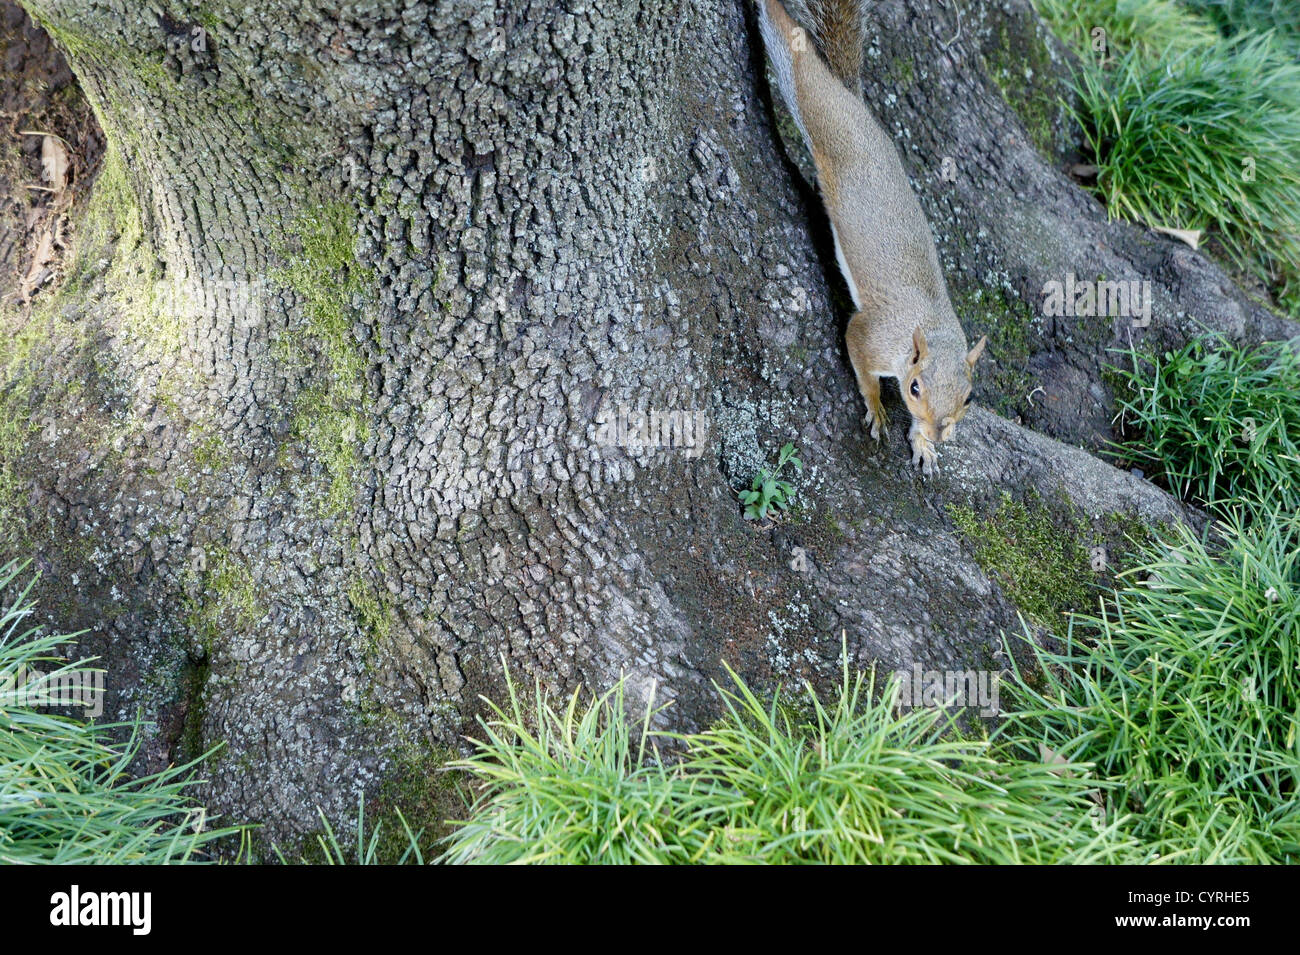 Linda ardilla roja apuntando sus pies en la parte inferior de un árbol. Foto de stock